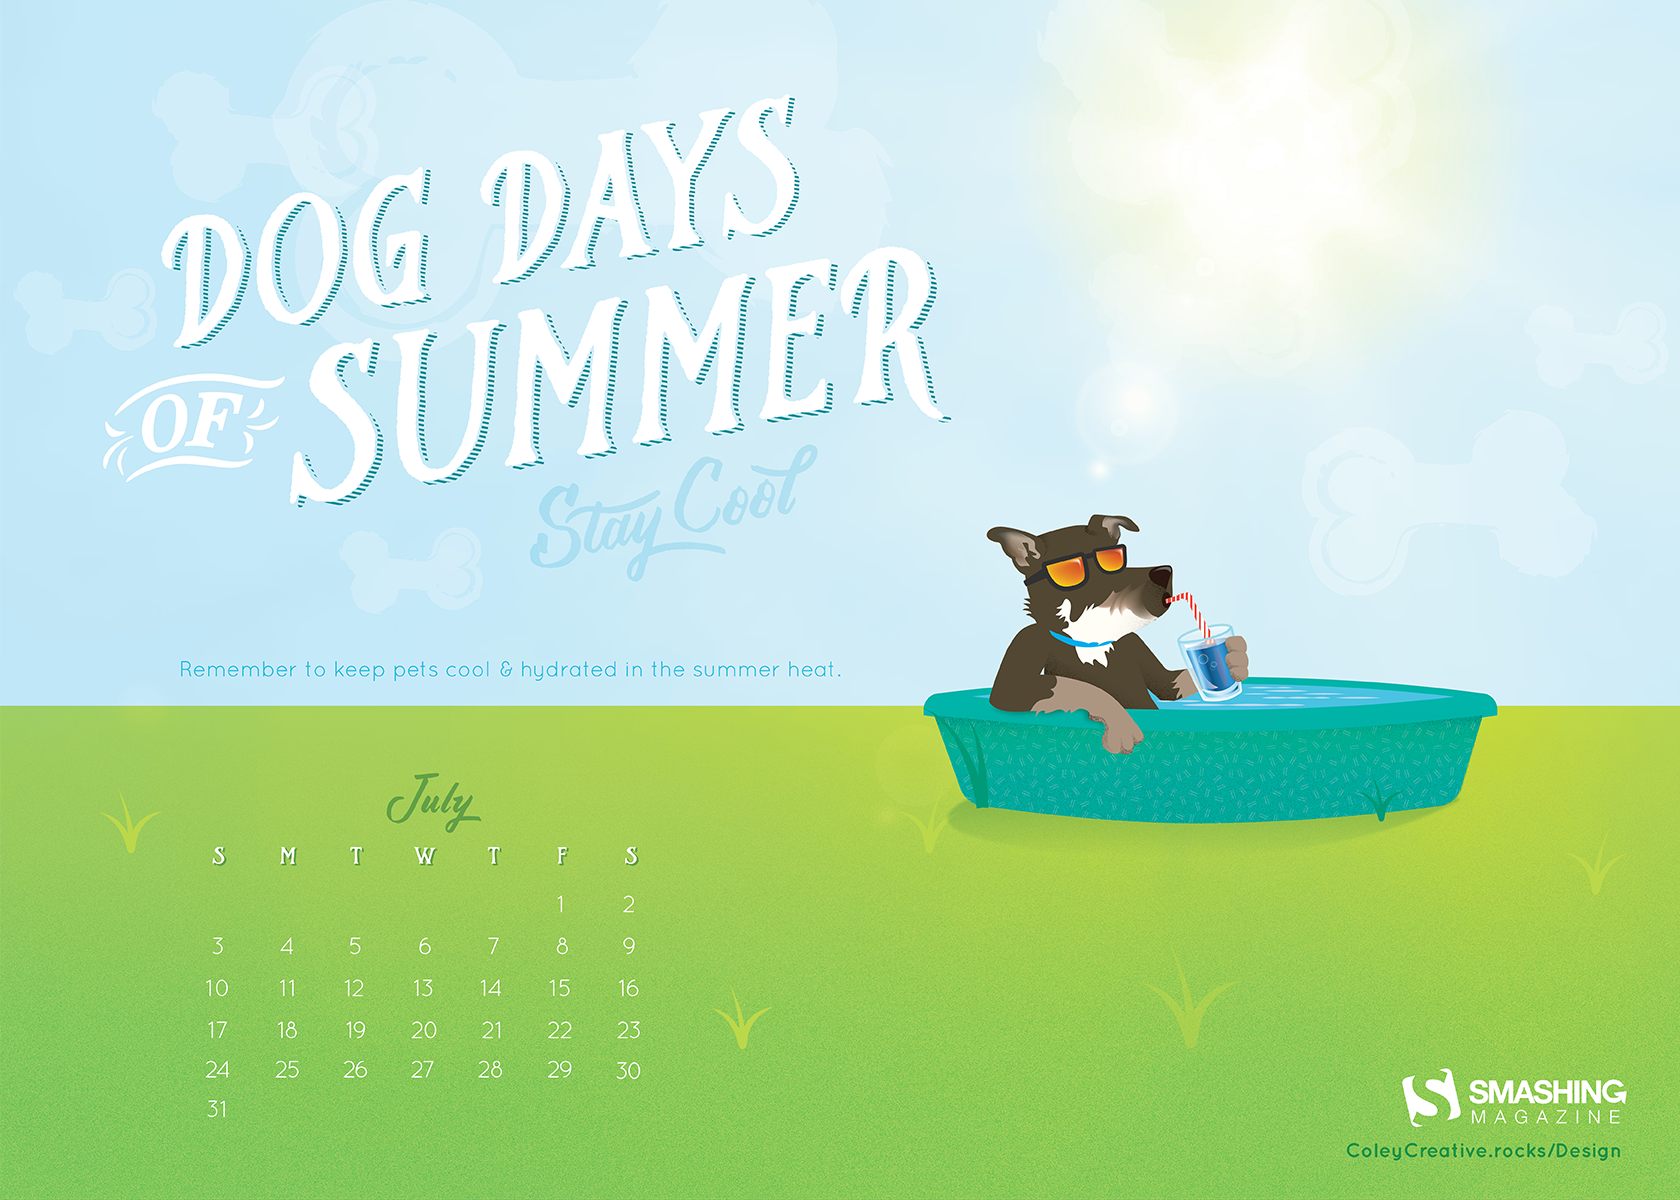 Переведи на русский dog day. Dog Days of Summer. Dog Days of Summer идиома. Дог дей обои. Обои календарь июль.